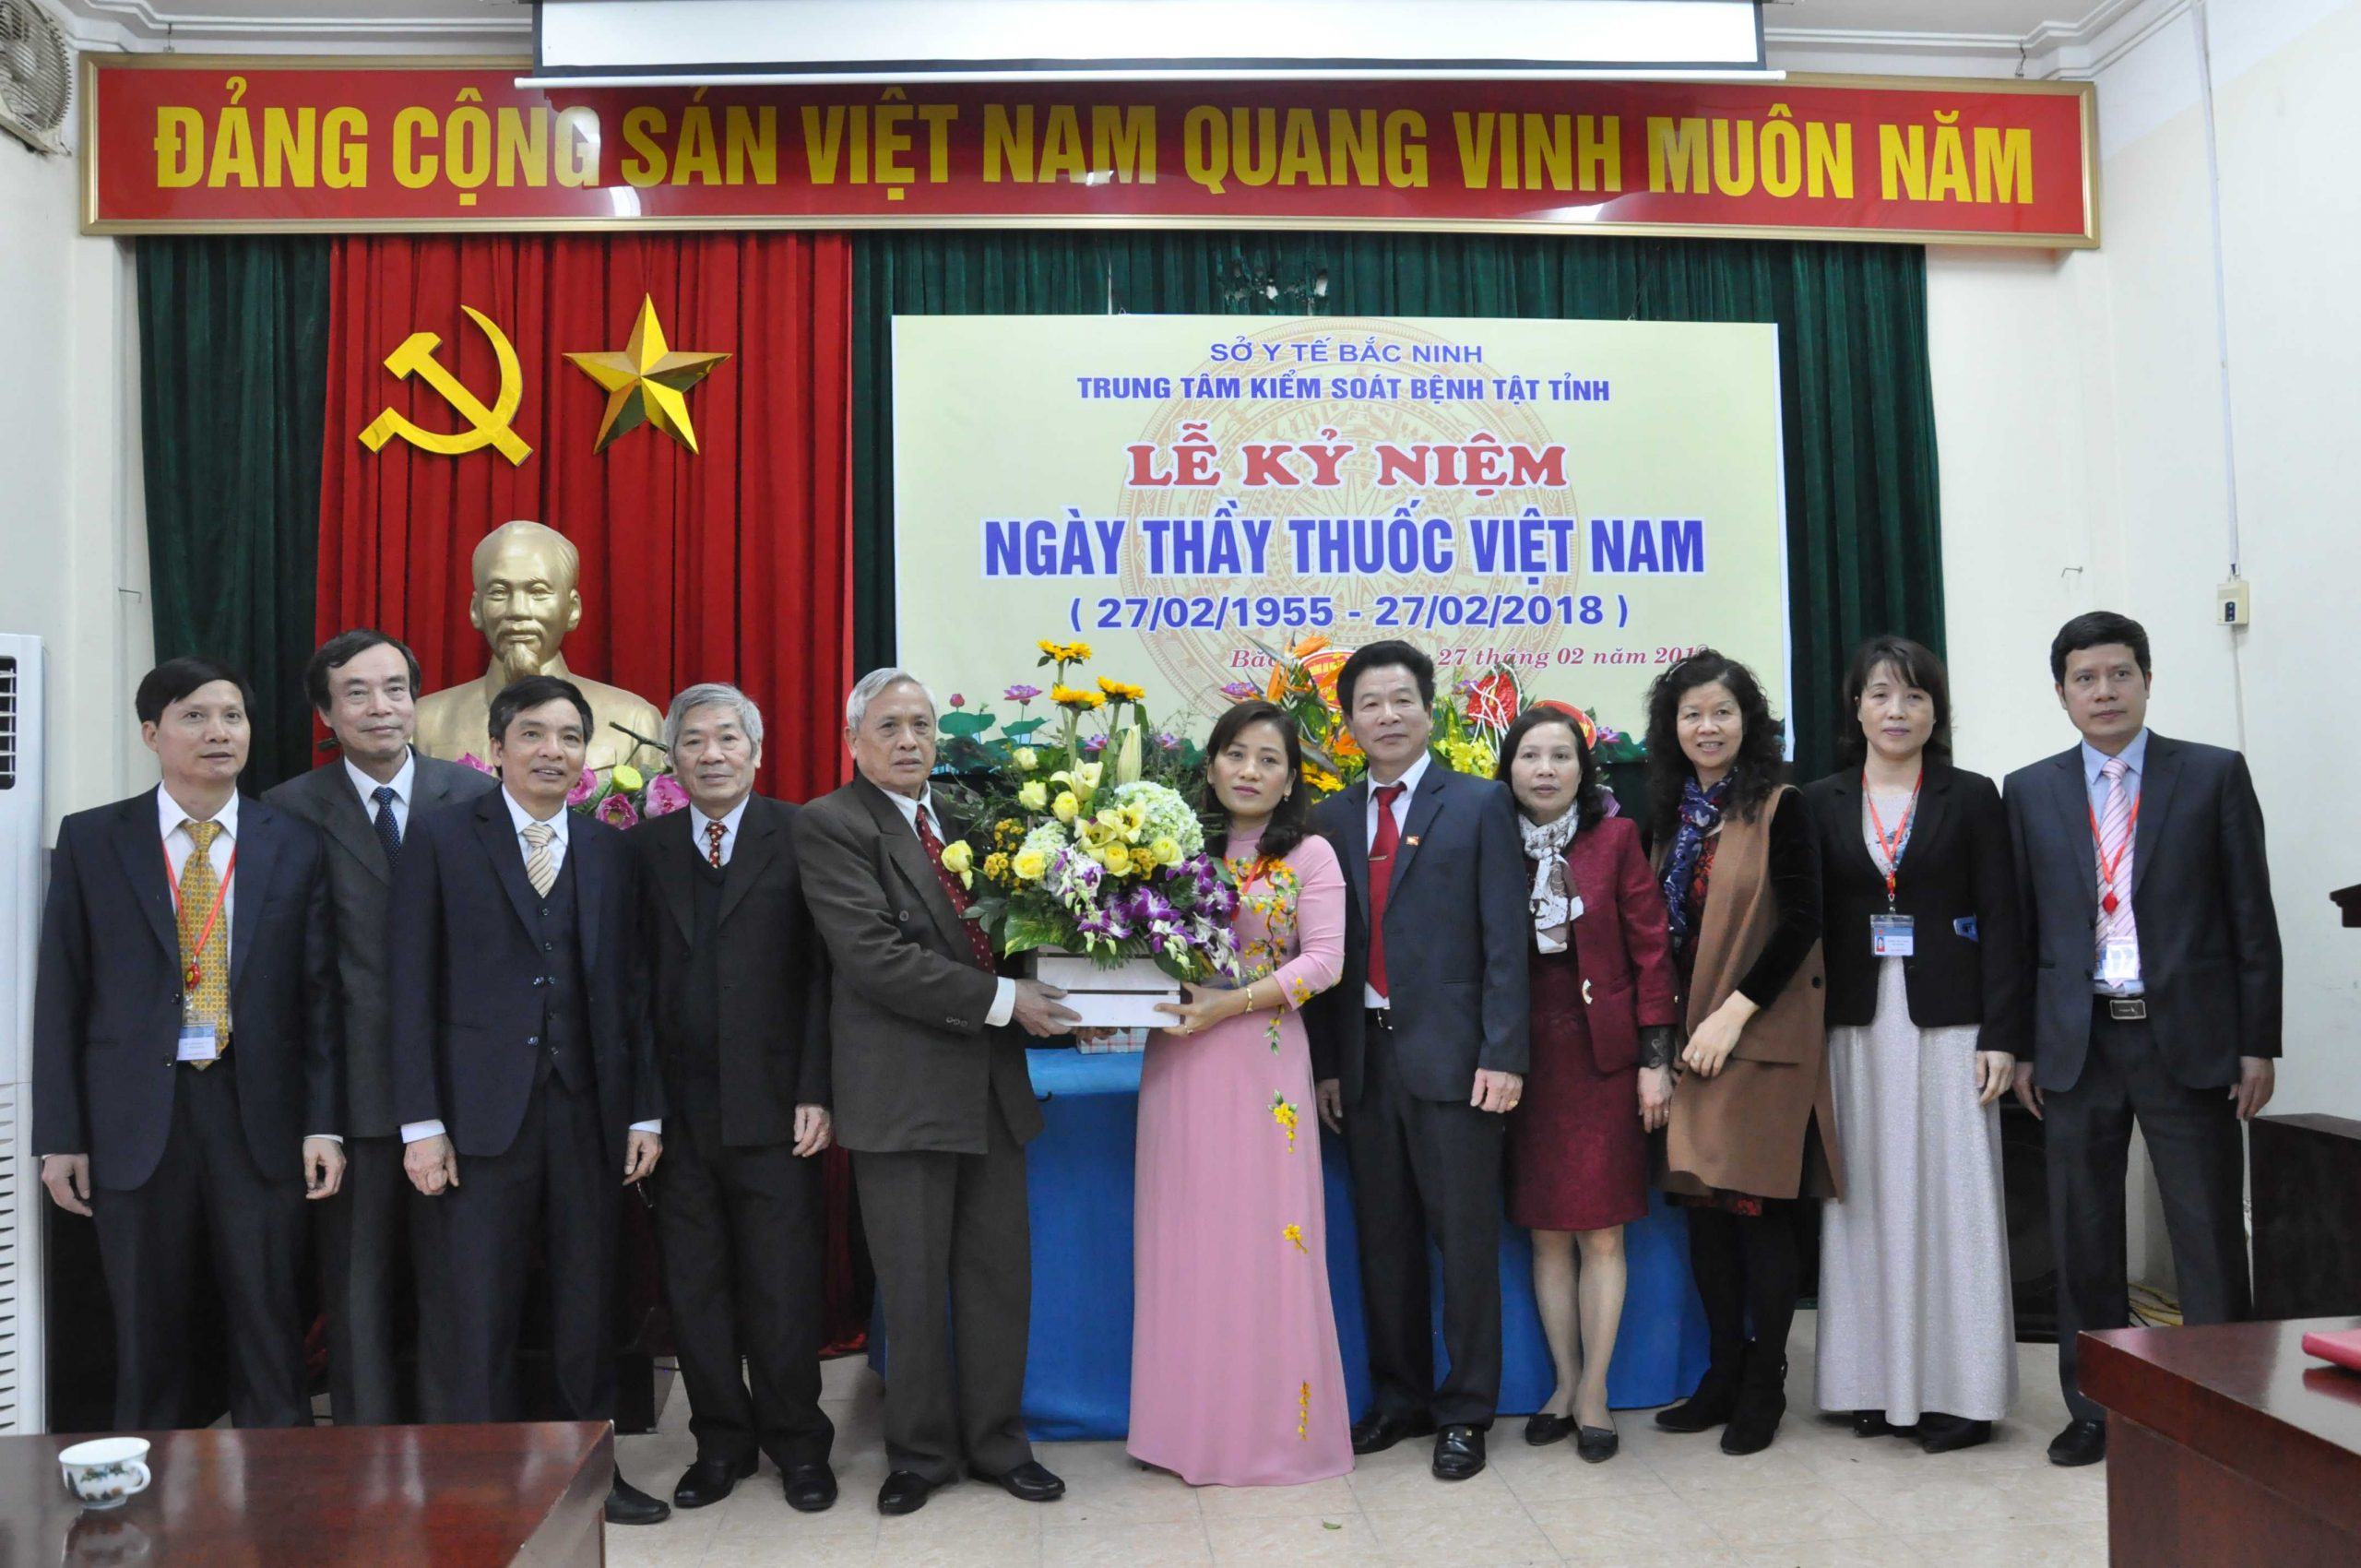 Trung tâm Kiểm soát bệnh tật tỉnh Bắc Ninh: Nơi cung cấp những thông tin y tế bổ ích 13